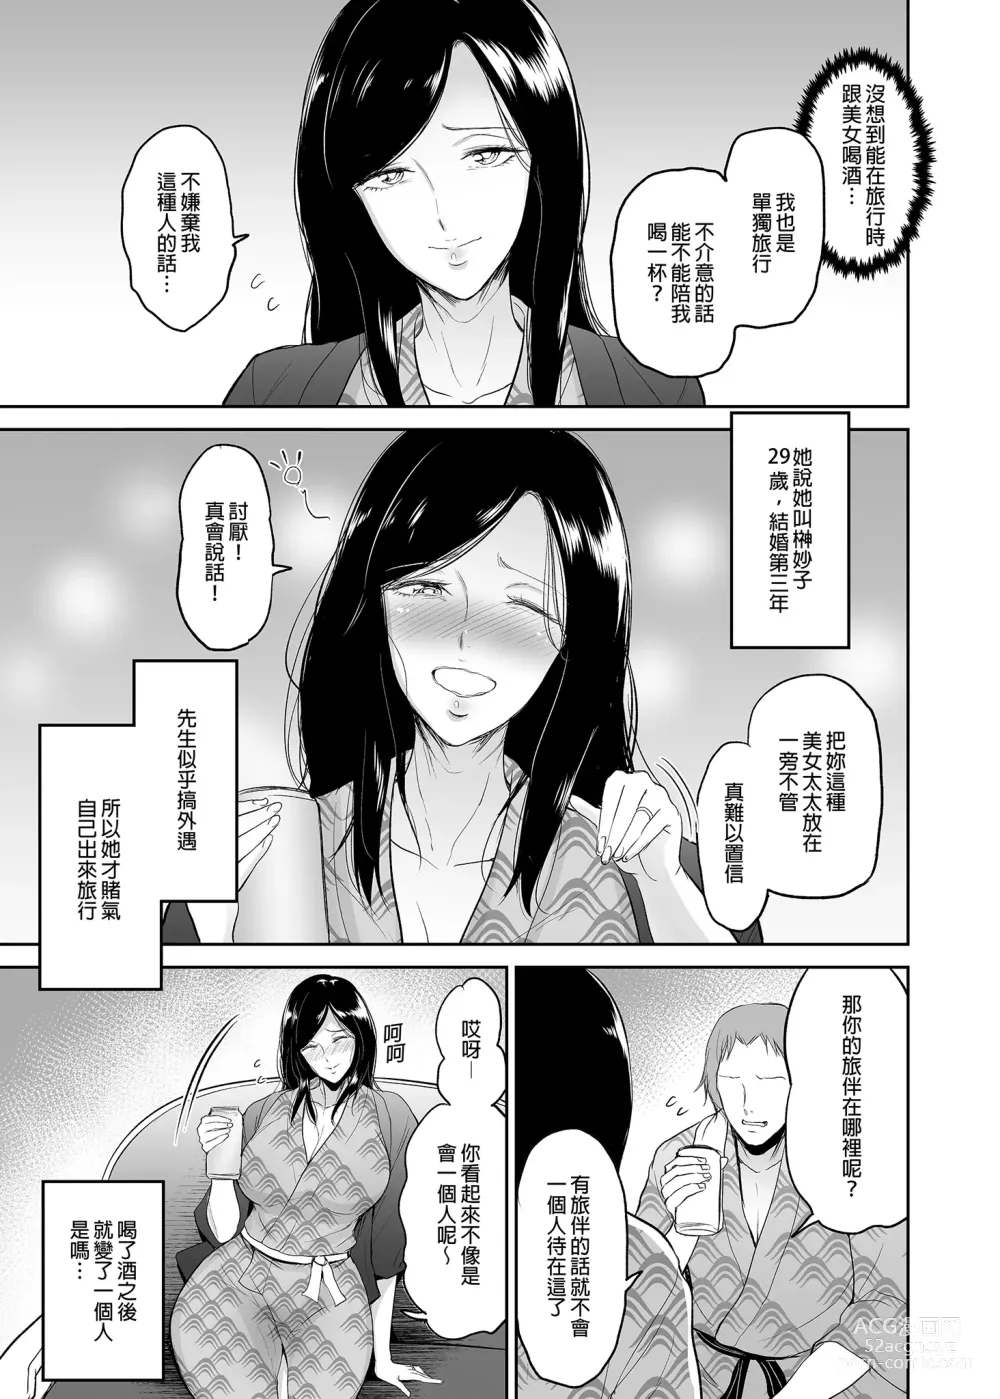 Page 8 of doujinshi マリエさんと温泉+マリエさんとお風呂場+処女を散らす部屋